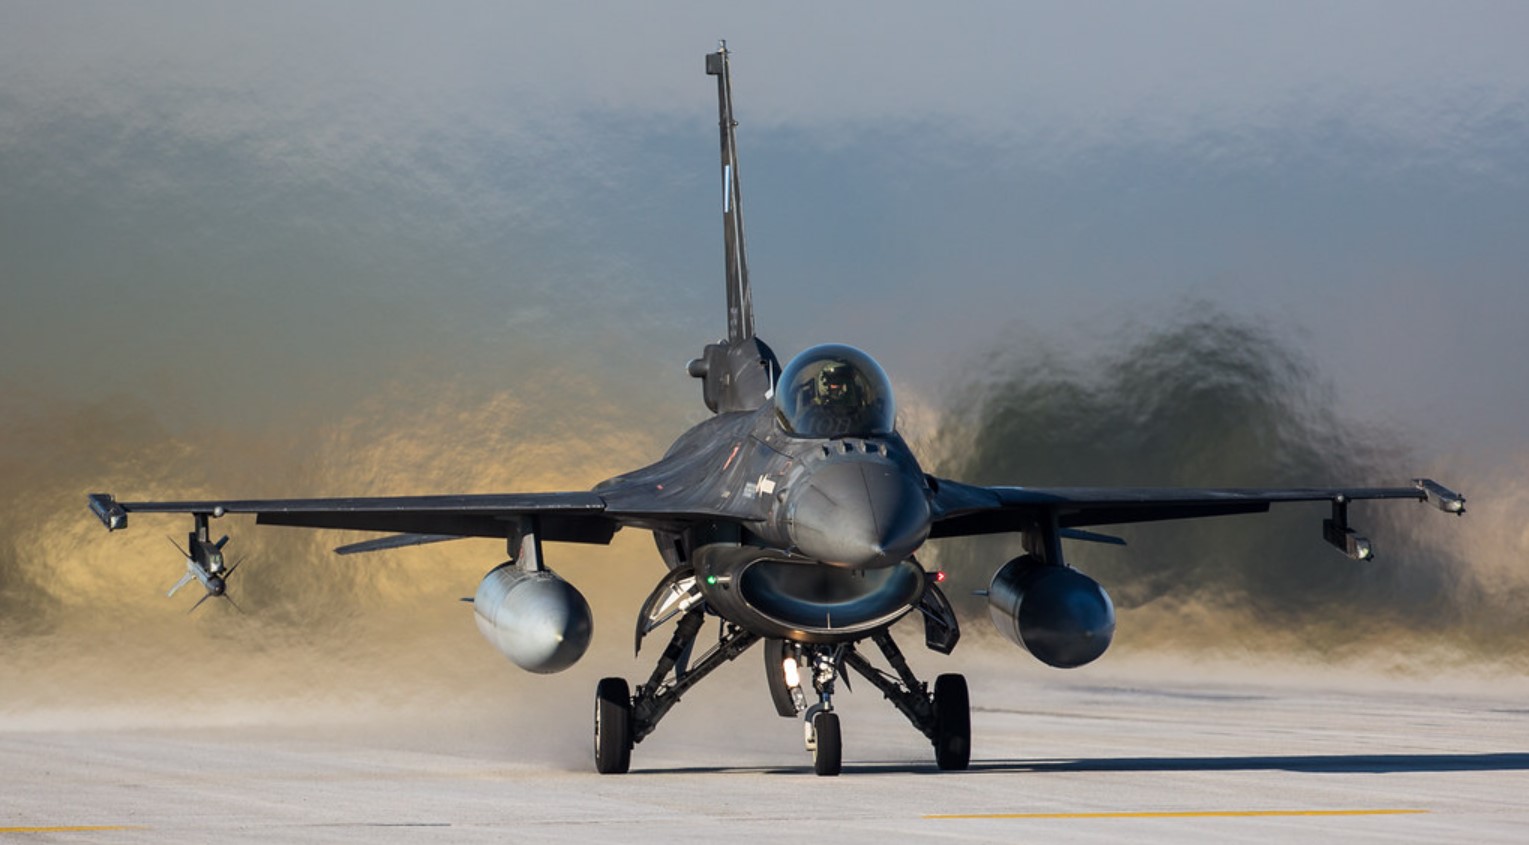 F-16C "Block 52+" Повітряних сил Греції. 2016 рік. Фото: Steve Cooke